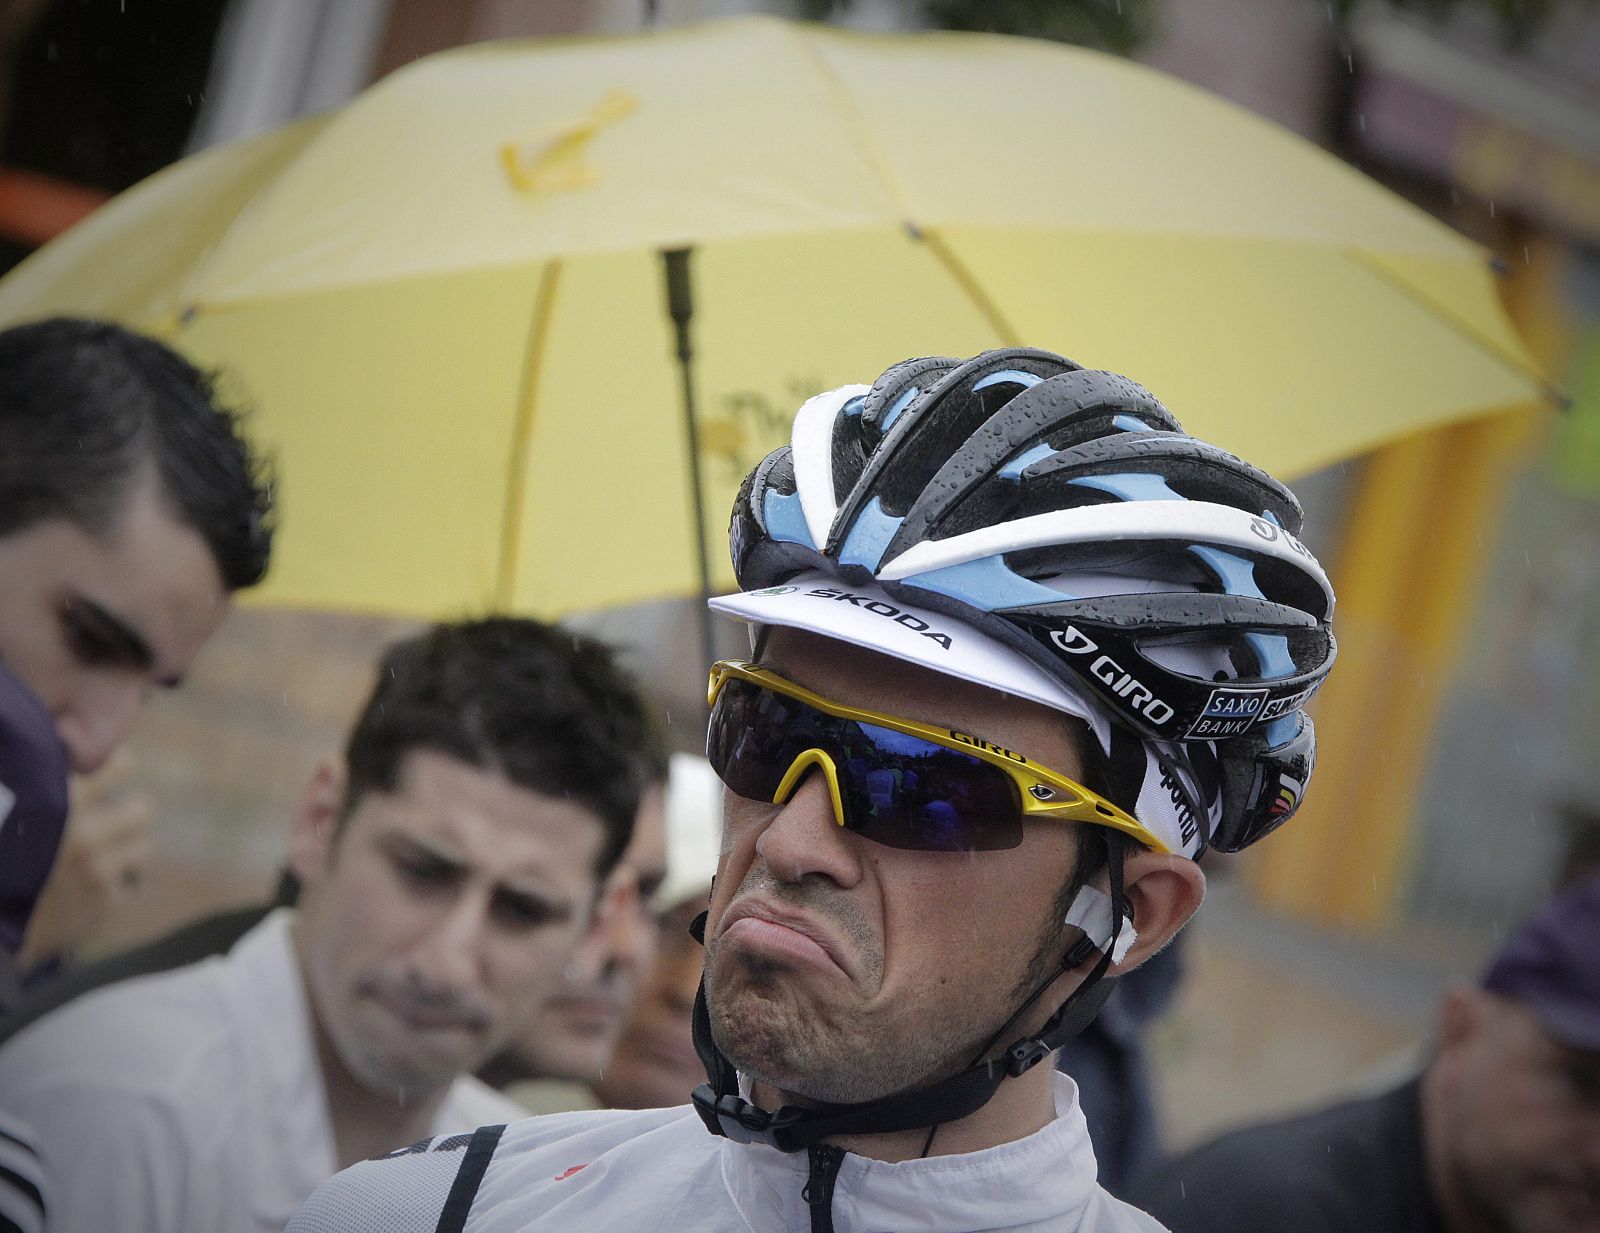 El corredor español del Saxo Bank, Alberto Contador, espera al comienzo de la undécima etapa del Tour de Francia.